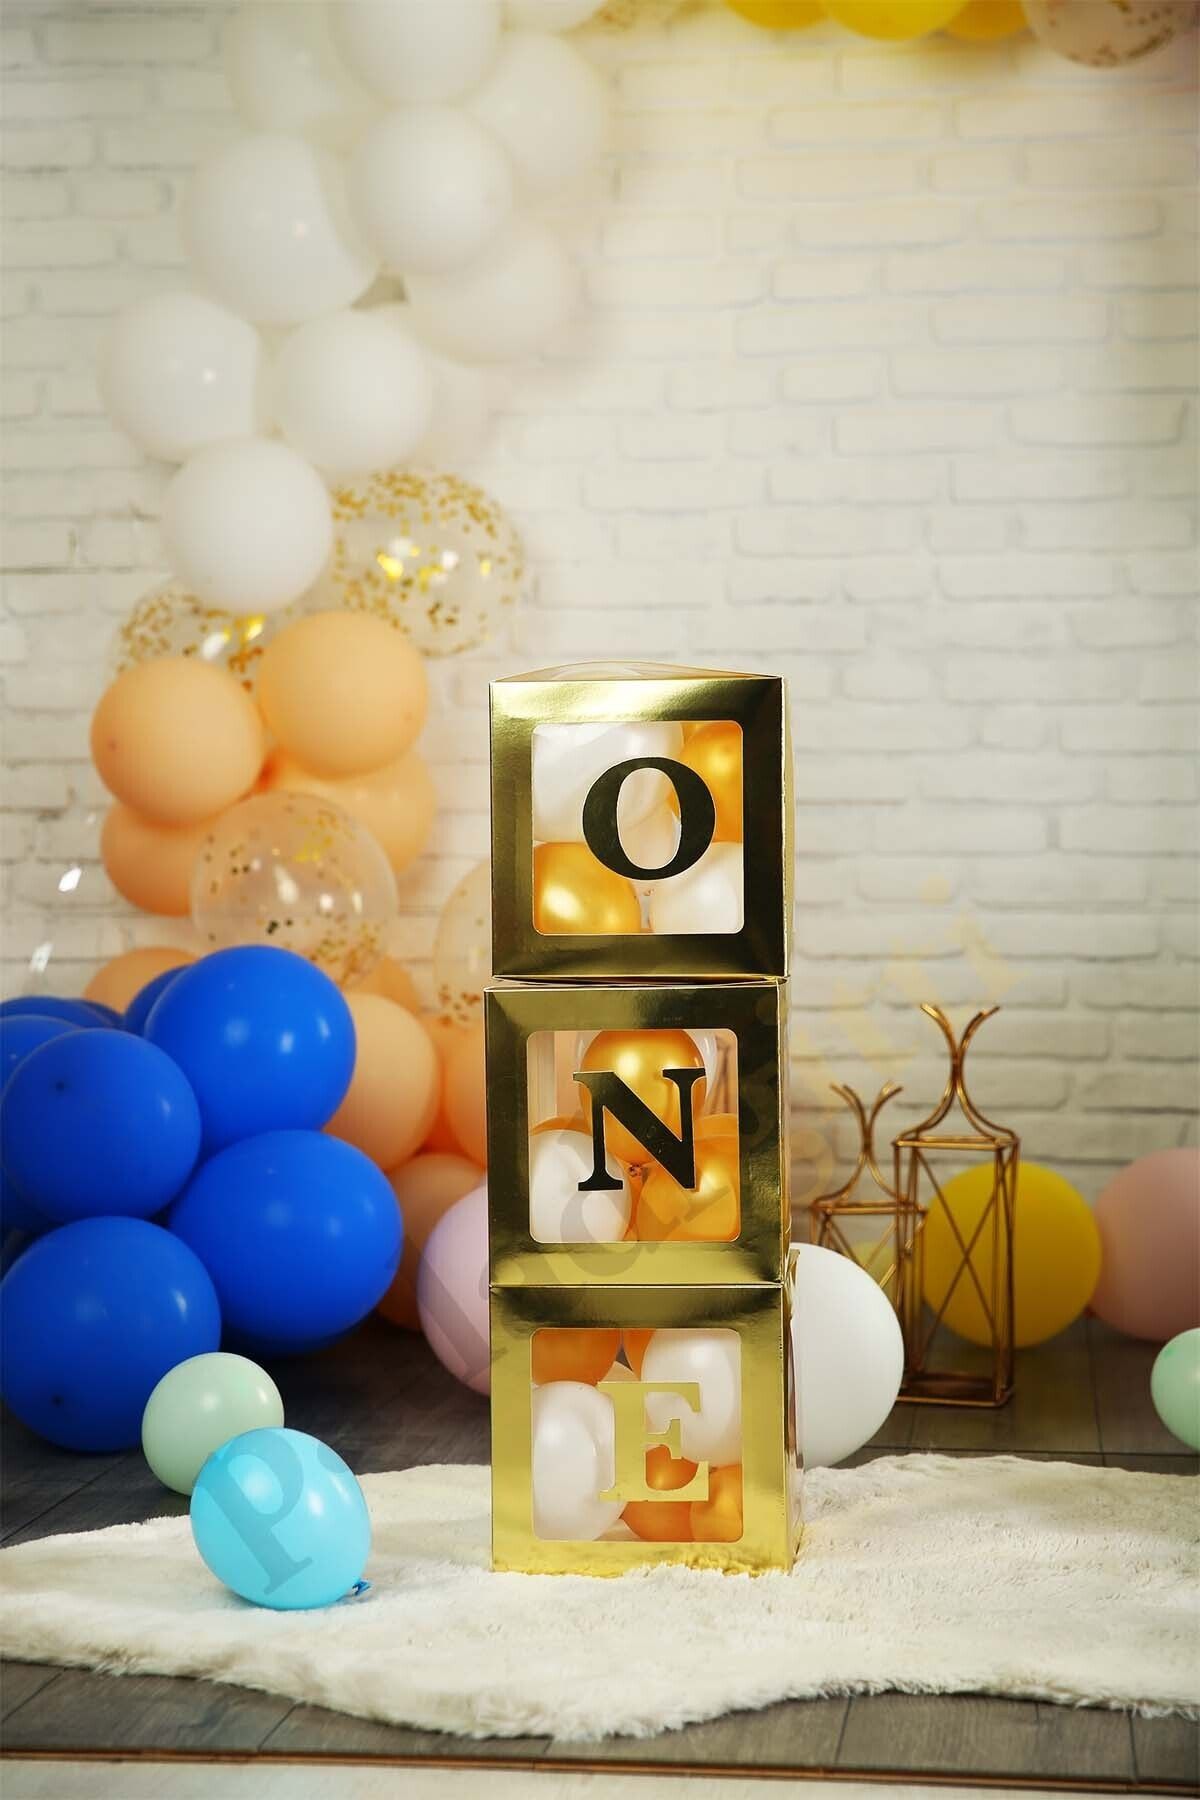 Patladı Gitti One Yazılı Gold Kutu Ve Balon Seti Bebek 1 Yaş Doğum Günü Kutlama